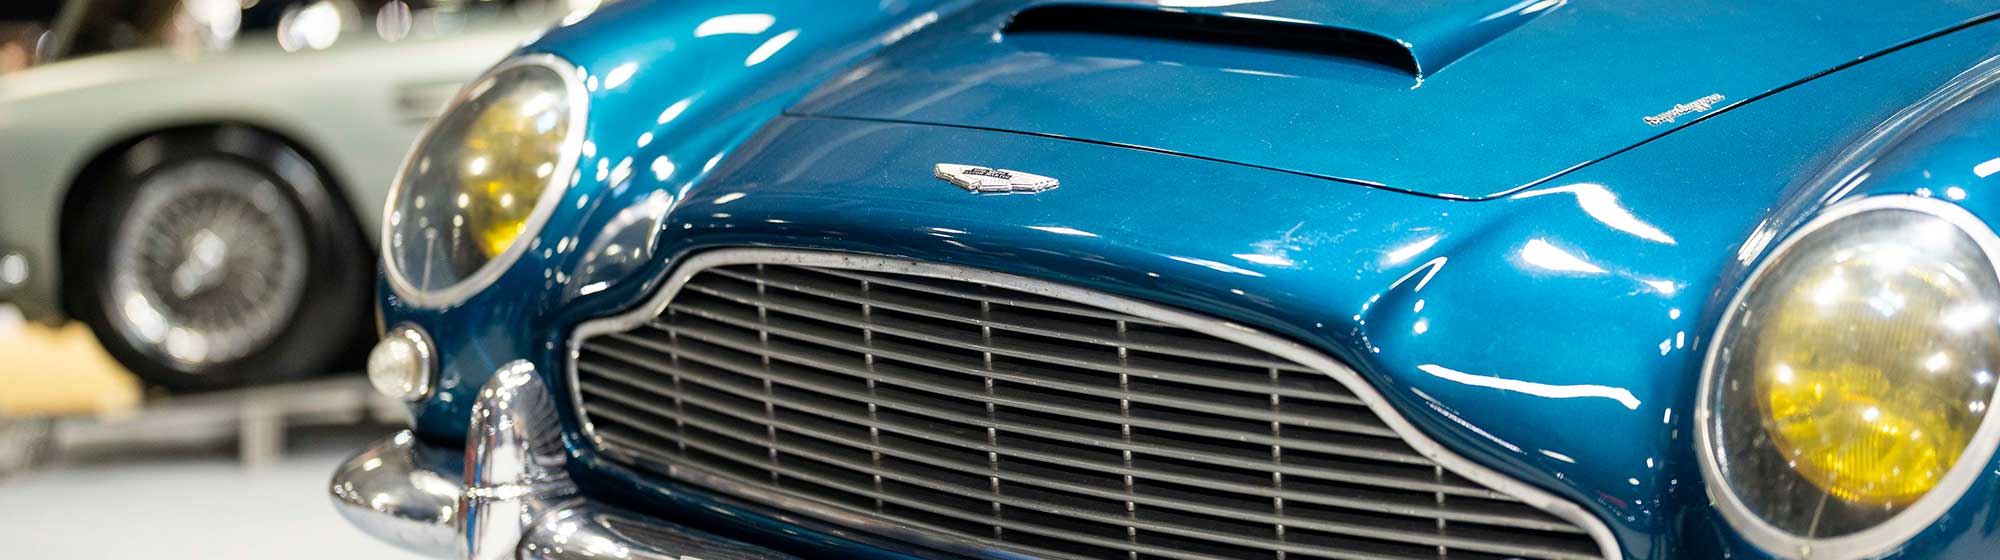 Aston Martin Vintage Bleu